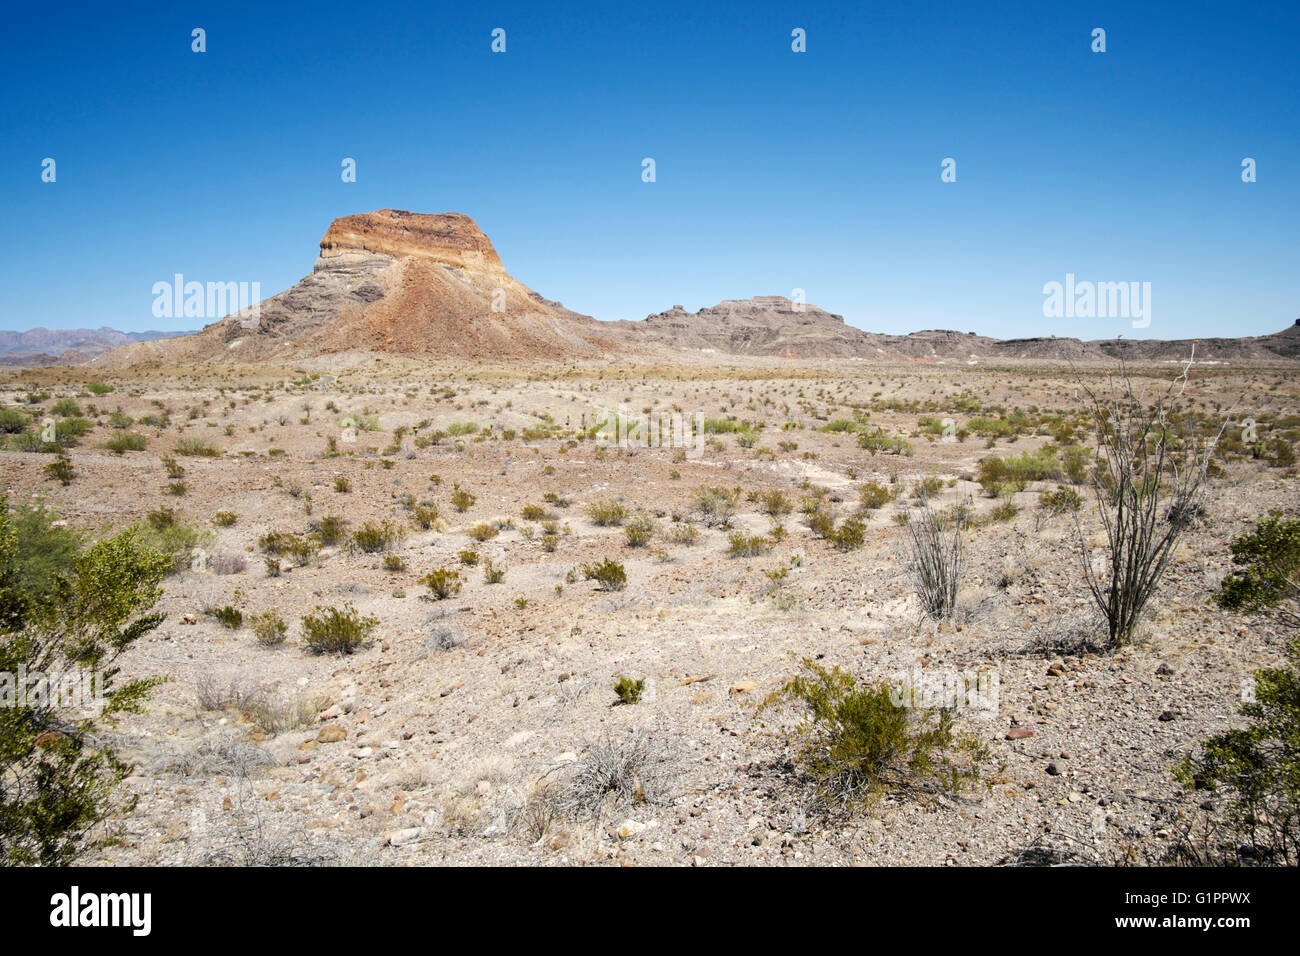 Cerro Castellan si siede in un deserto pianura alluvionale vicino Castolon nel Parco nazionale di Big Bend nel sud-ovest della Texas, Stati Uniti d'America Foto Stock